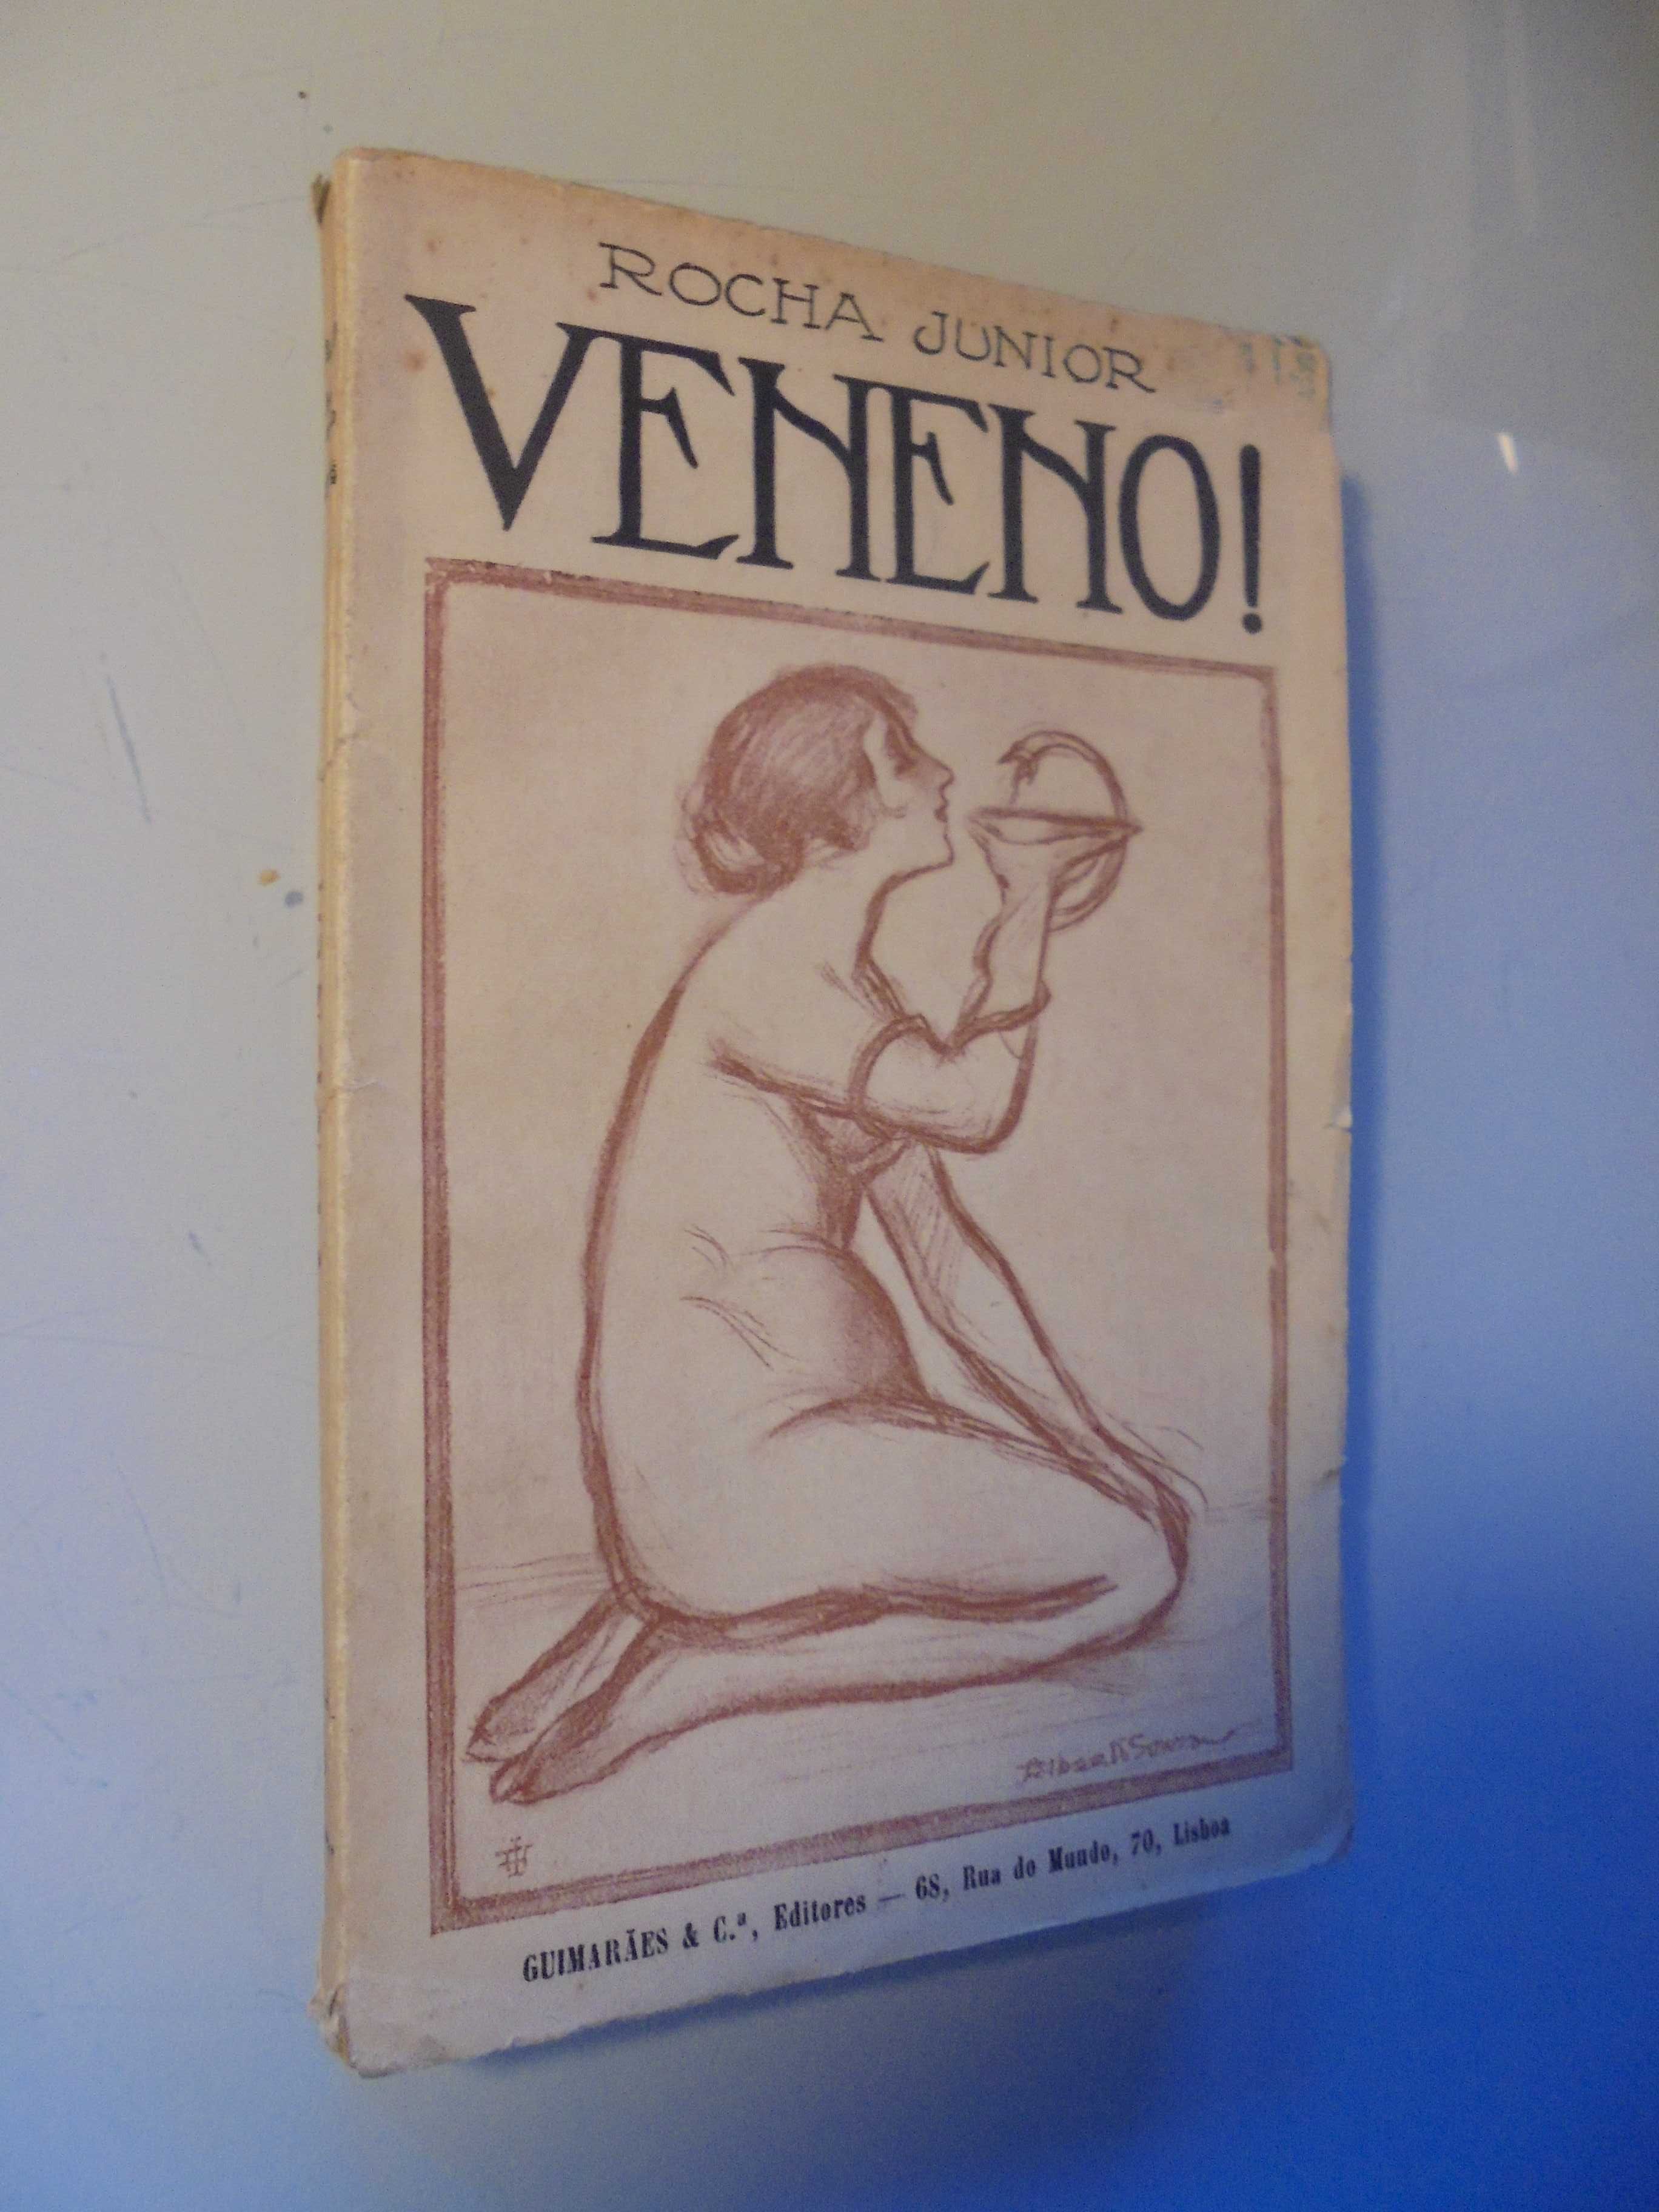 Junior (Rocha);Veneno;Guimarães & Cª Editores,1ª Edição,1917